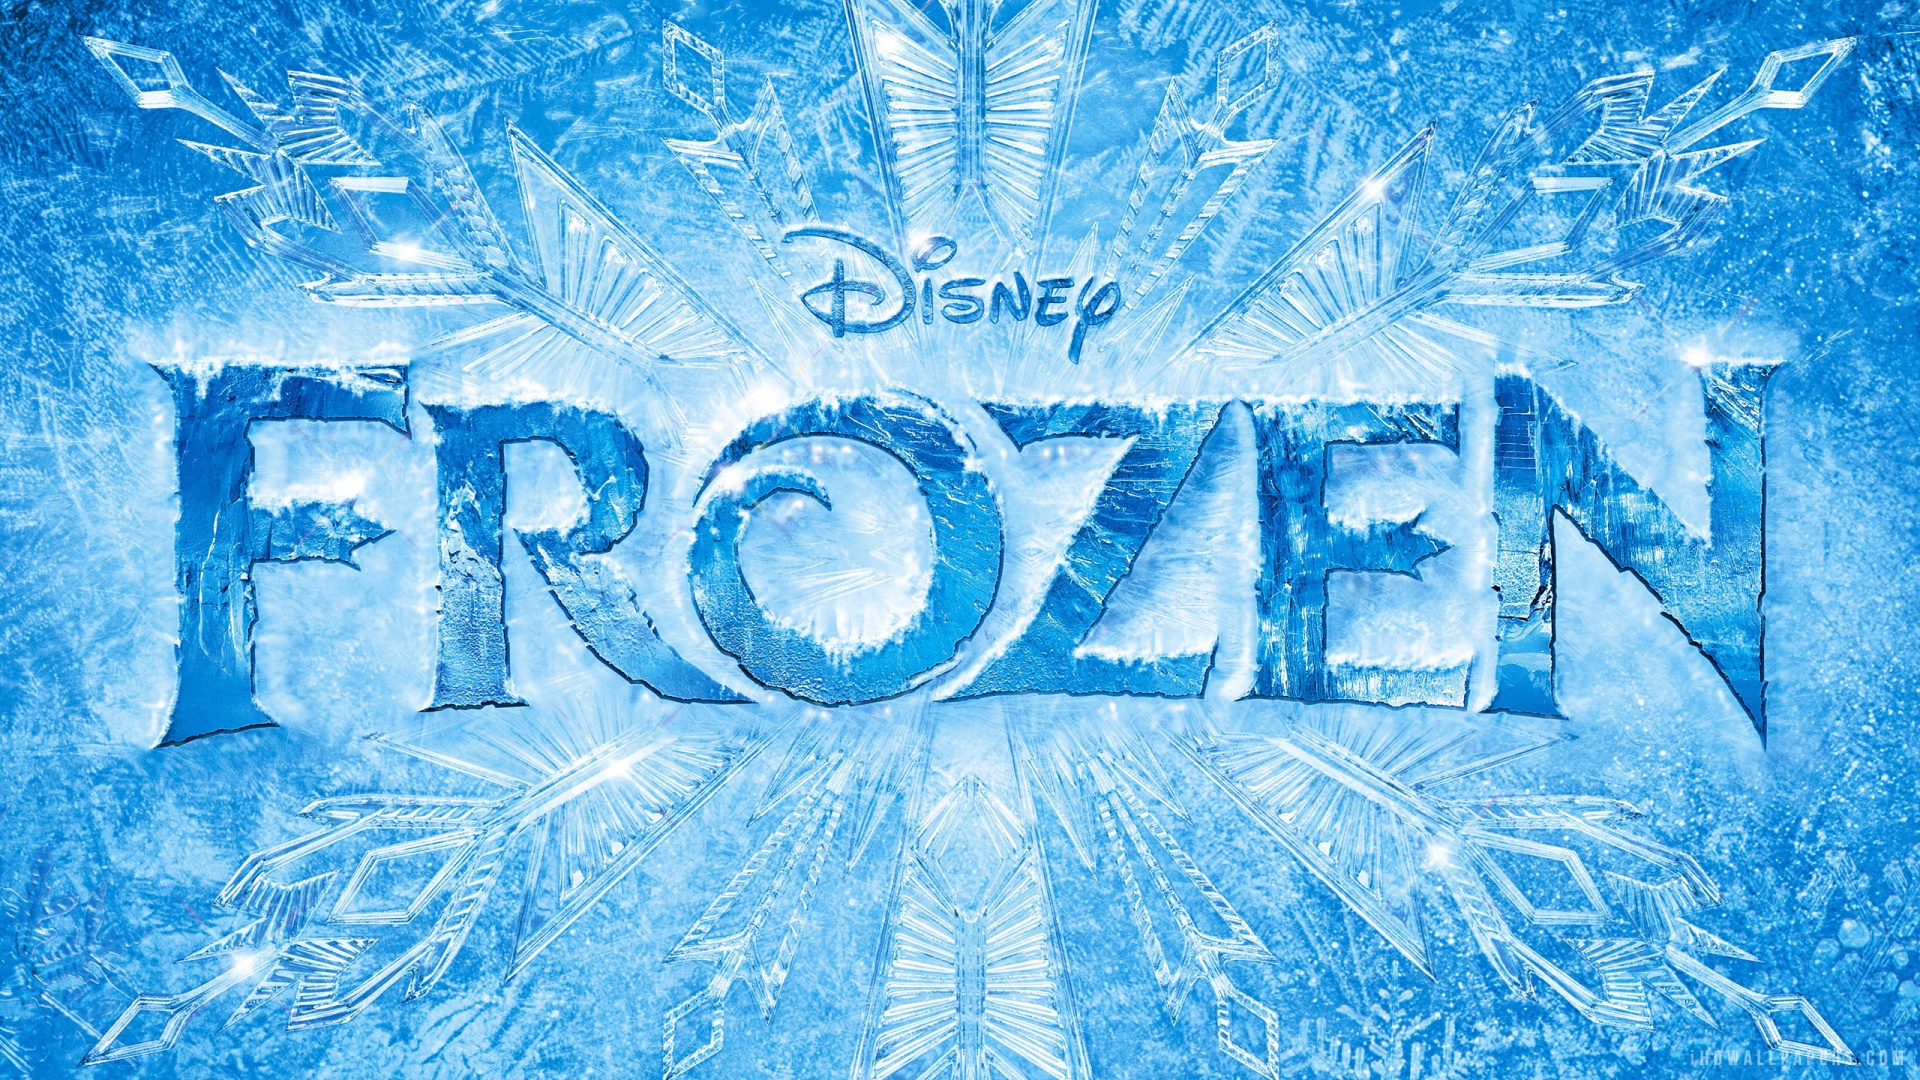 Disney Frozen HD Wallpaper IHD